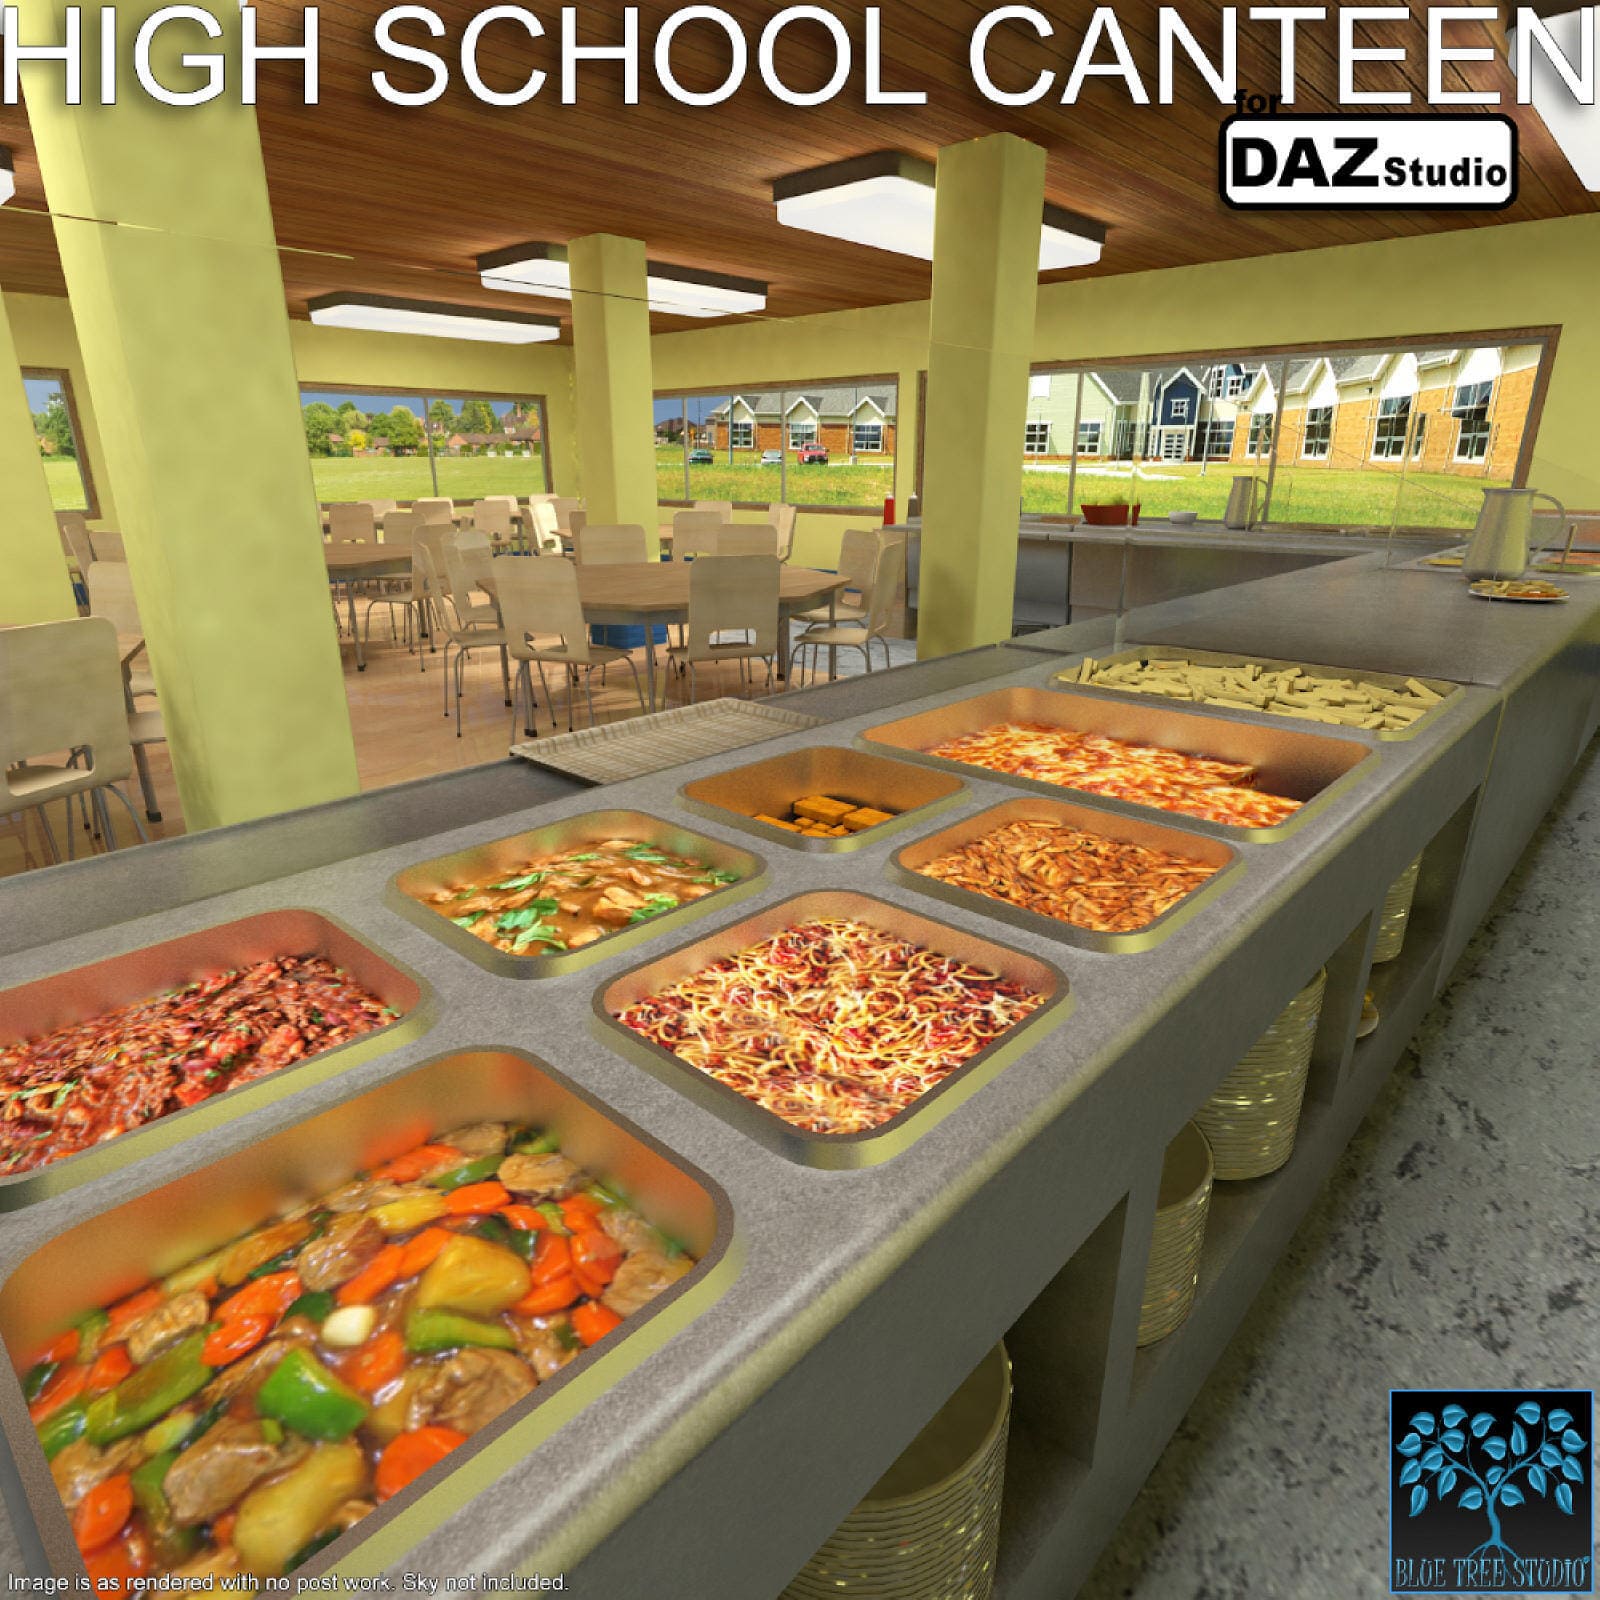 High School Canteen for Daz_DAZ3DDL